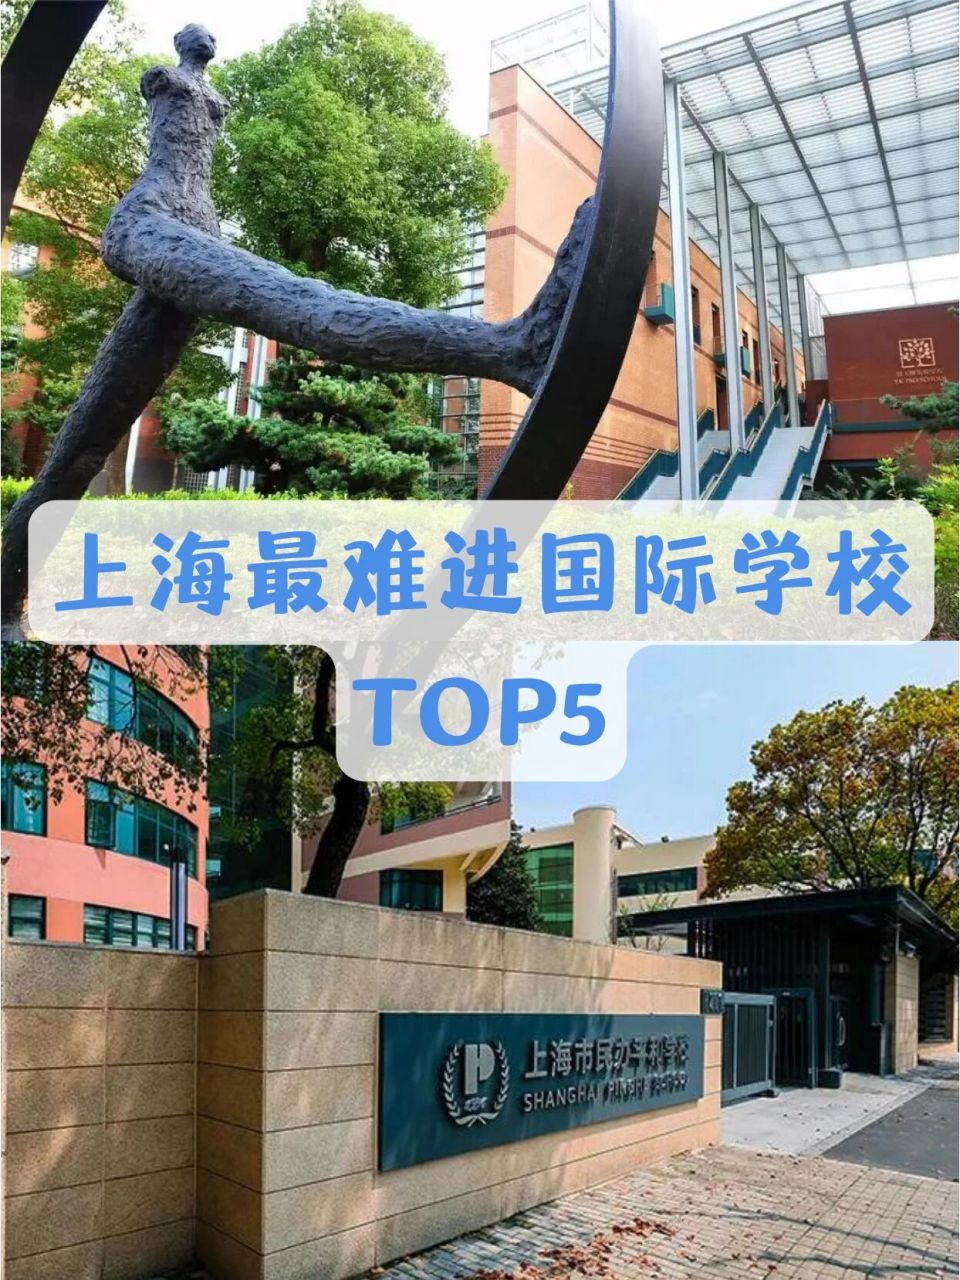 上海最难进的国际学校top5 73包玉刚实验学校 上海包玉刚实验学校